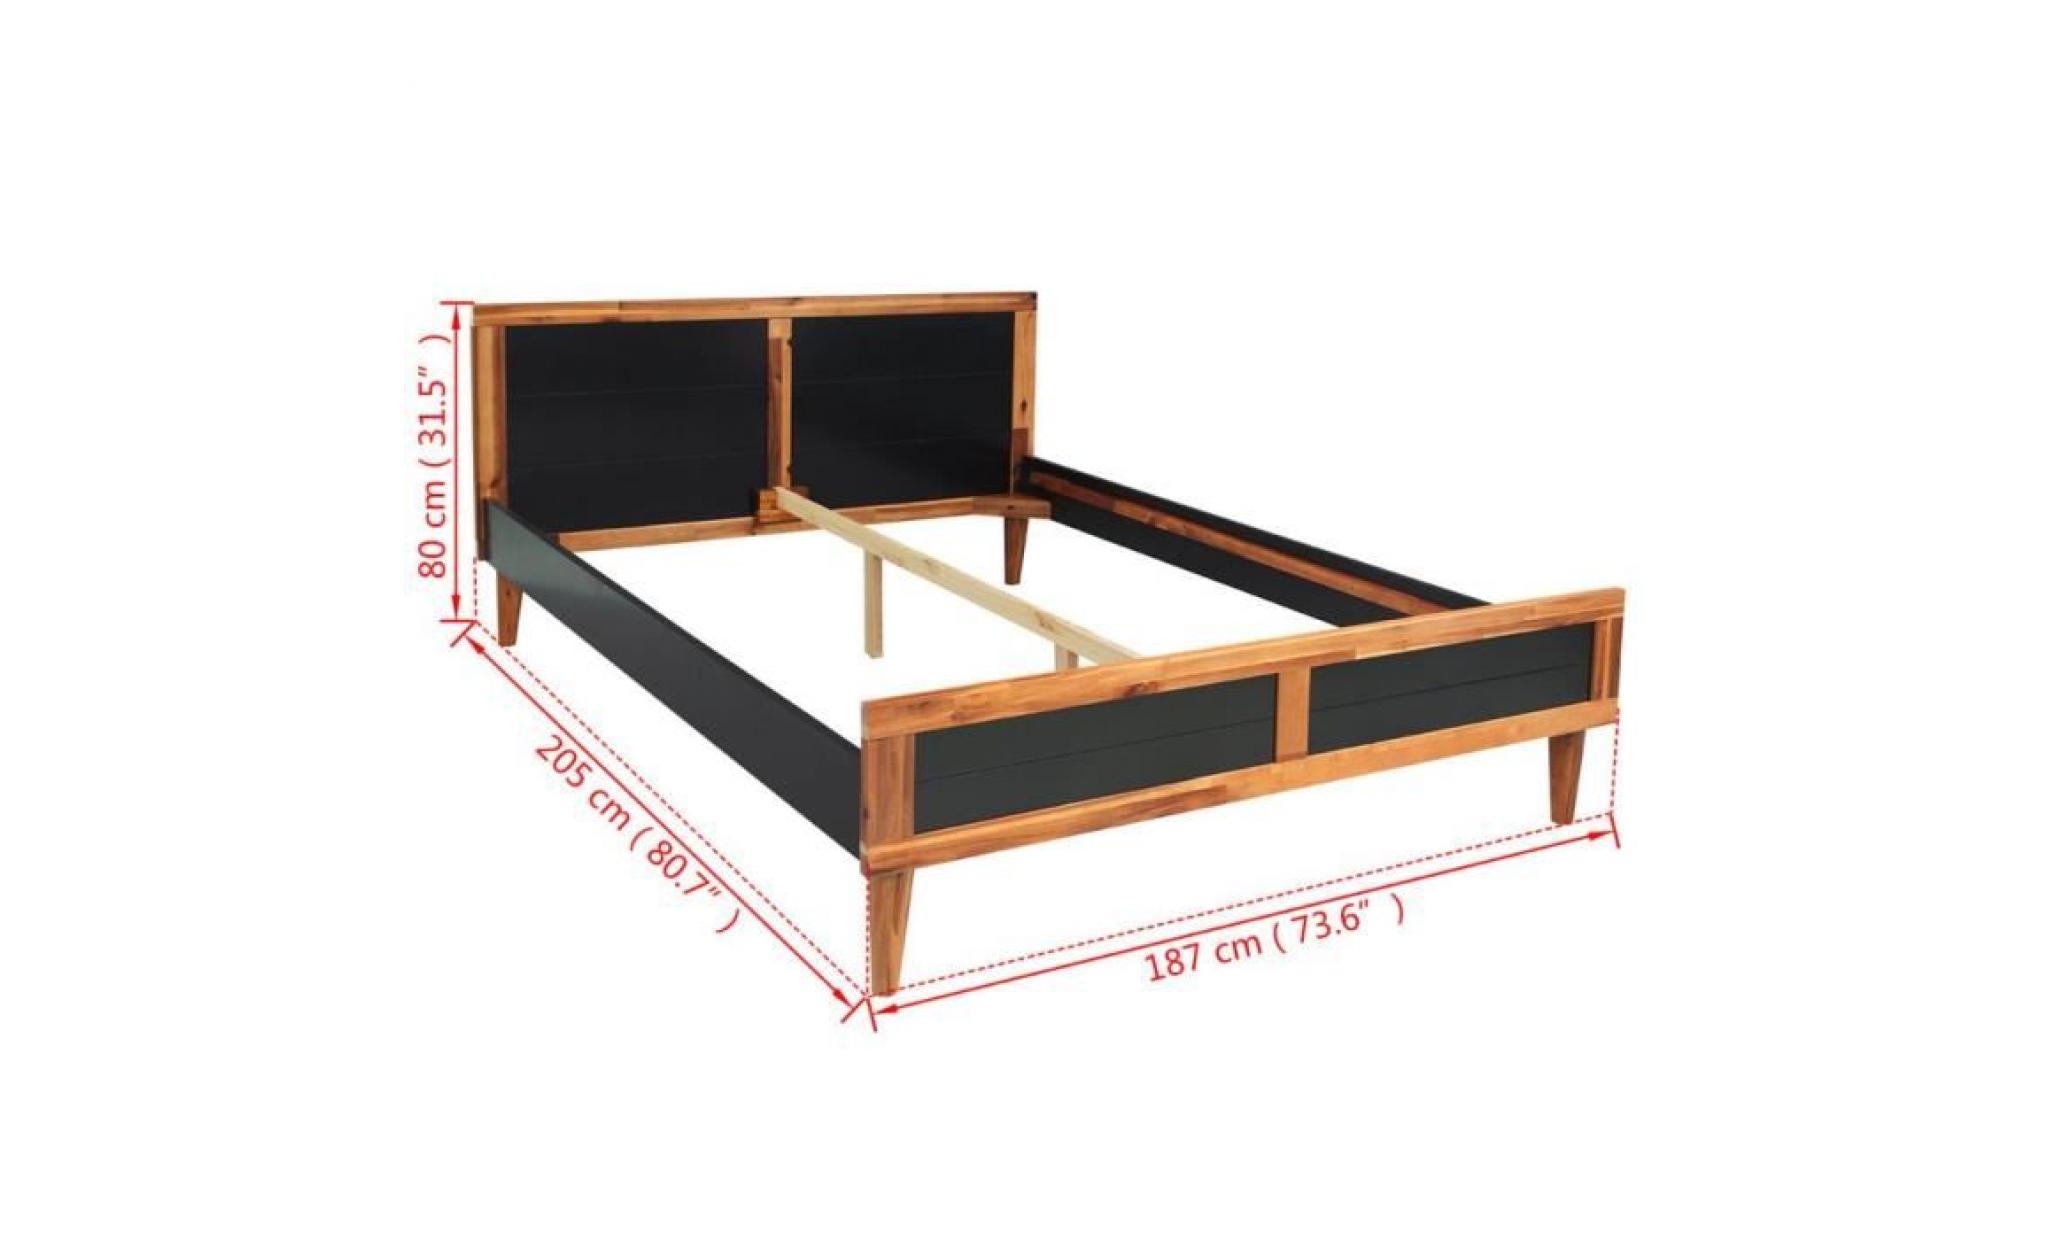 cadre de lit adulte contemporain enfant scandinave chambre dormir confortbois d'acacia massif 205 x 187 x 80 cmnoir pas cher